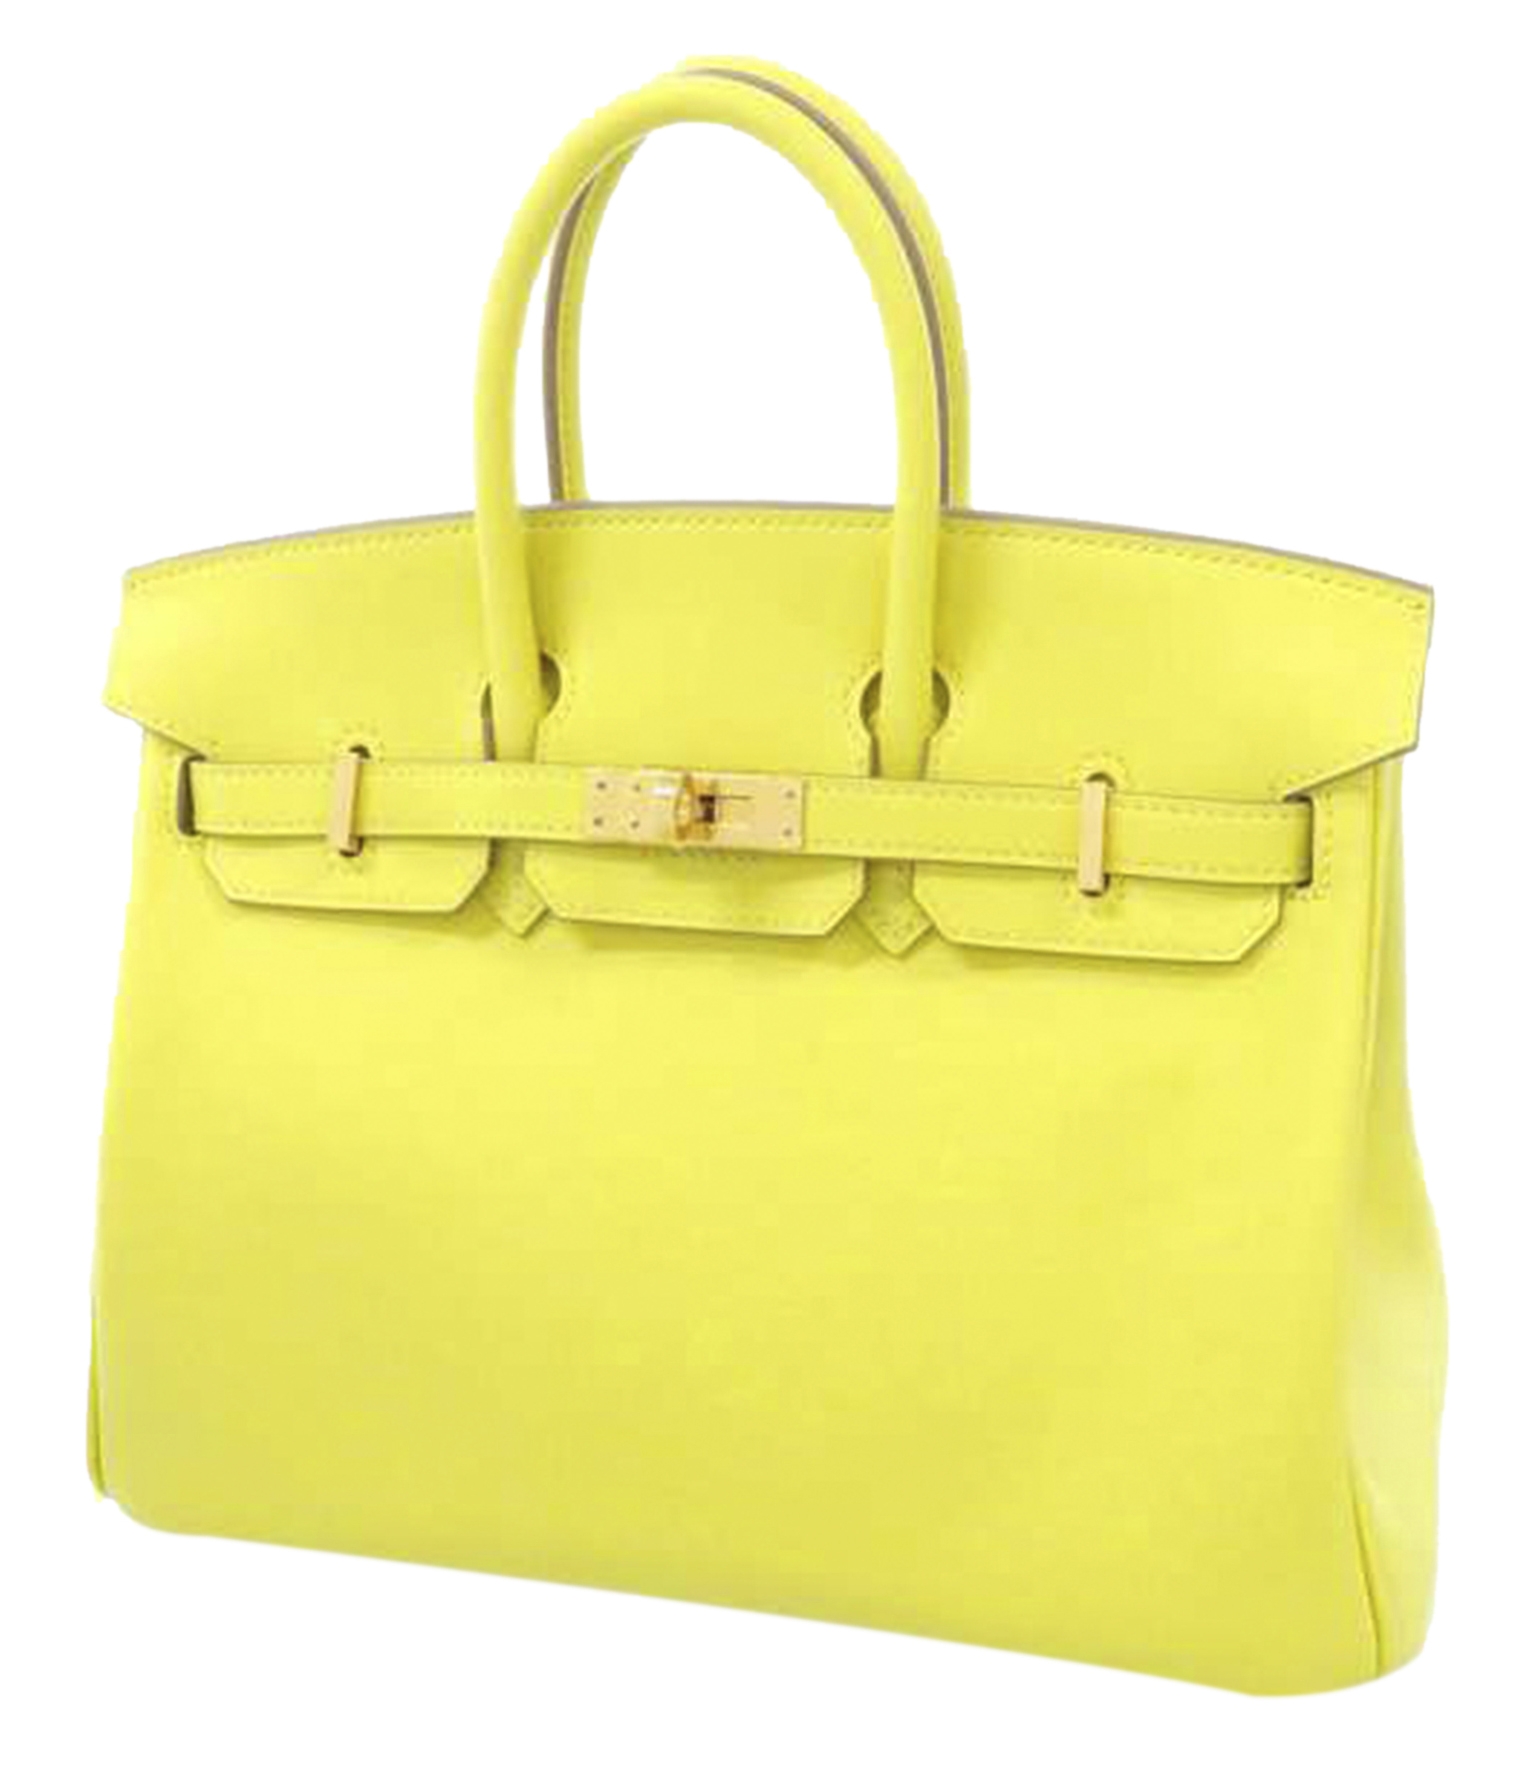 yellow birkin bag